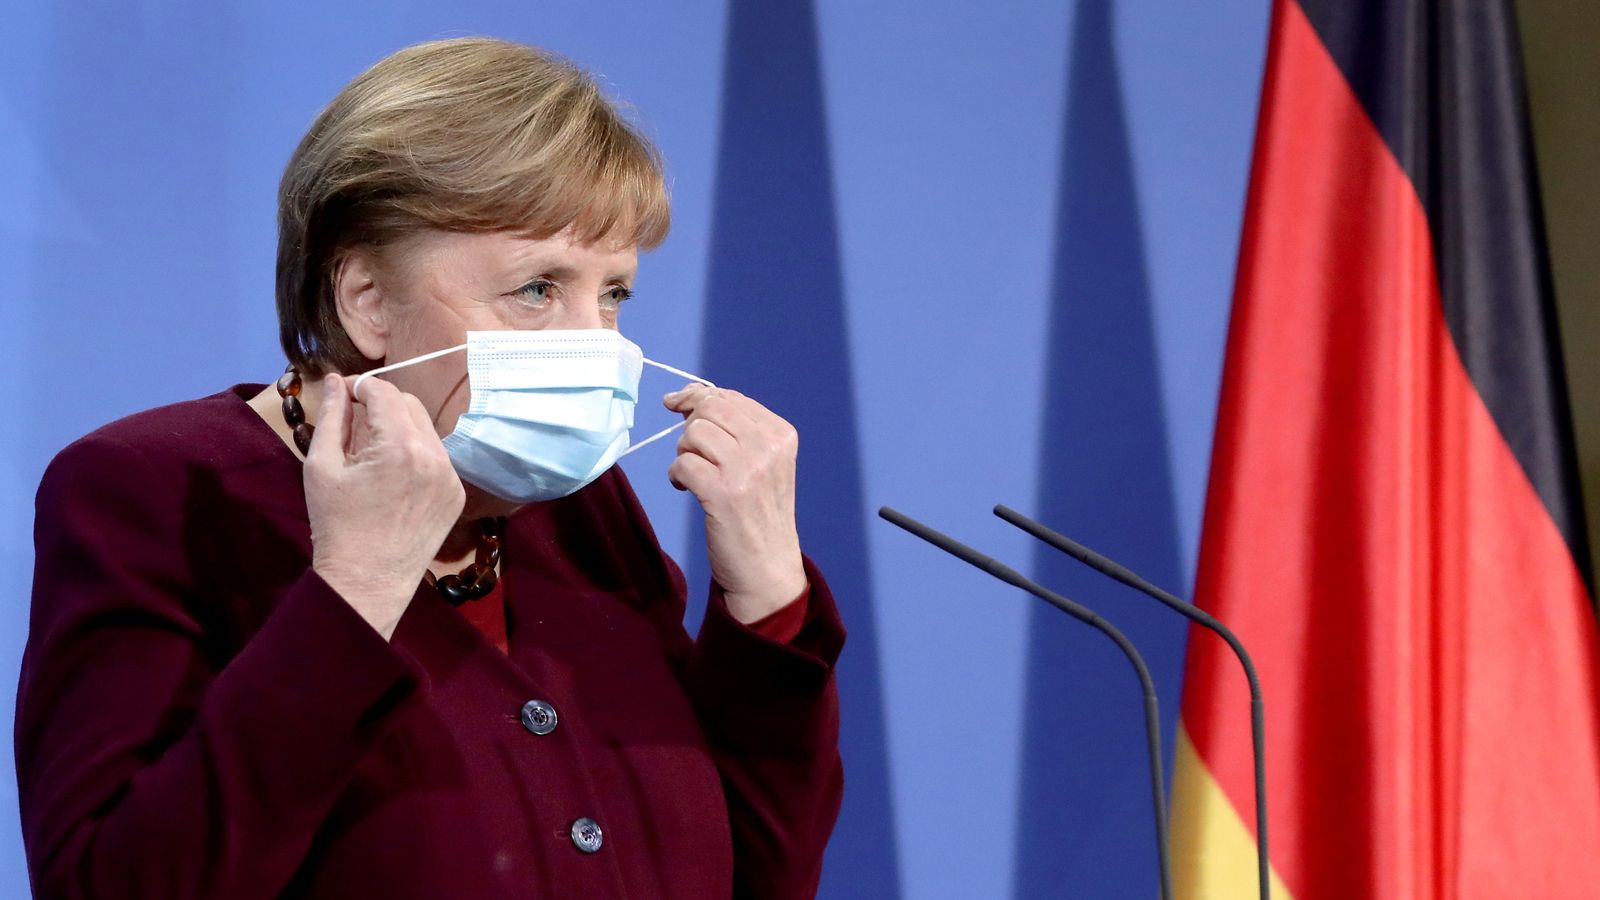 Govt-19: Deutsche Coronavirus-Beschränkungen für britische Reisende nach Merkel-Johnson-Treffen gelockert |  Weltnachrichten